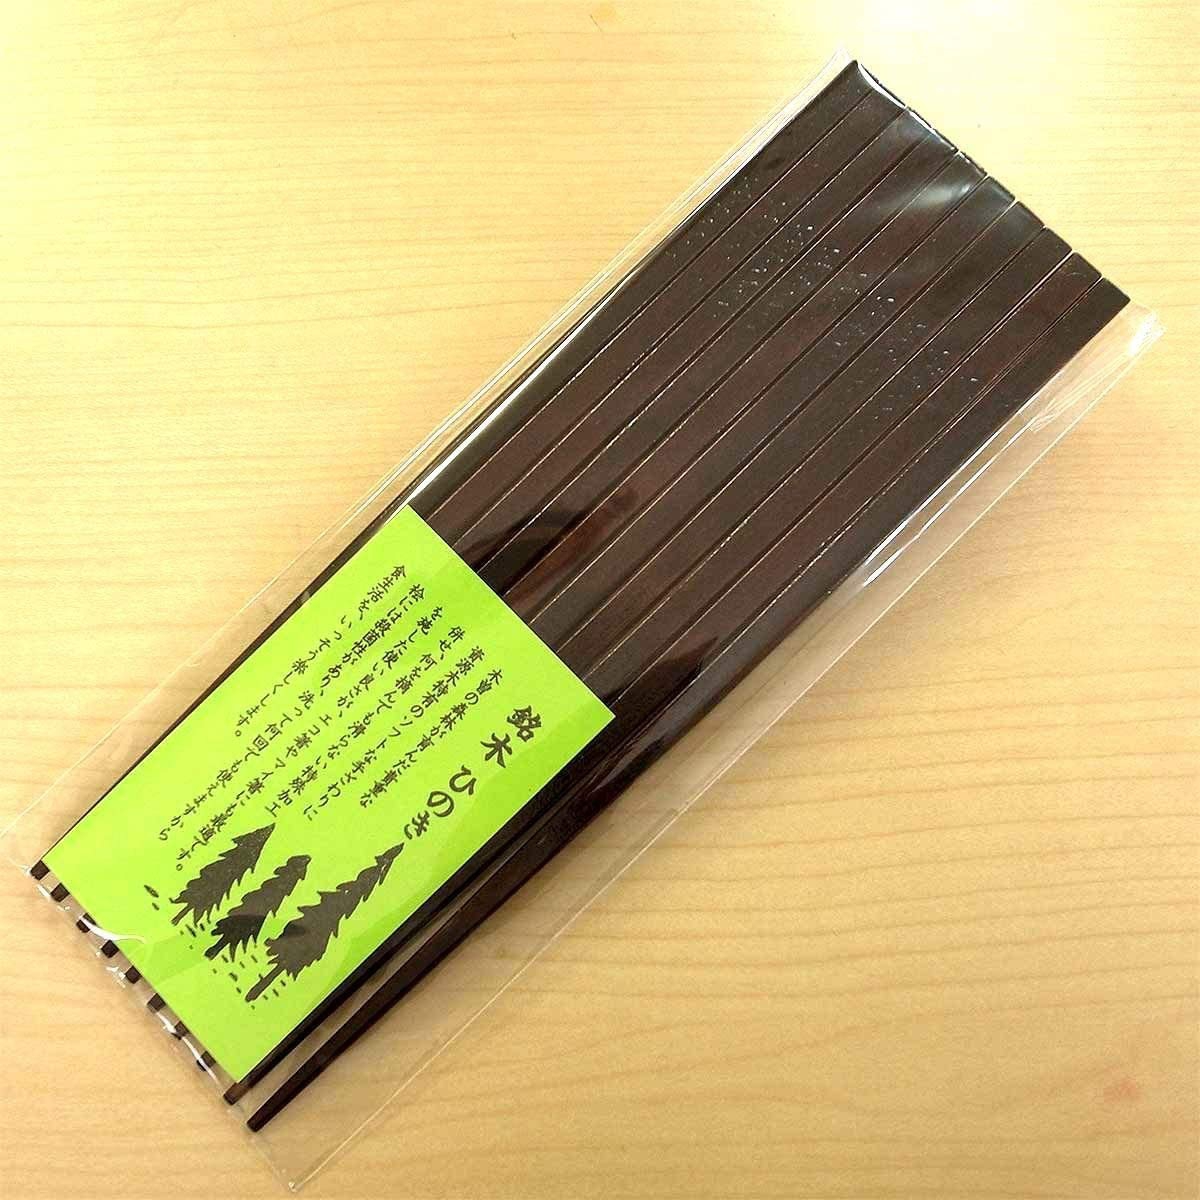 はりま屋(ハリマヤ) 木曽ひのき箸 5膳セット 22.0cmの商品画像8 